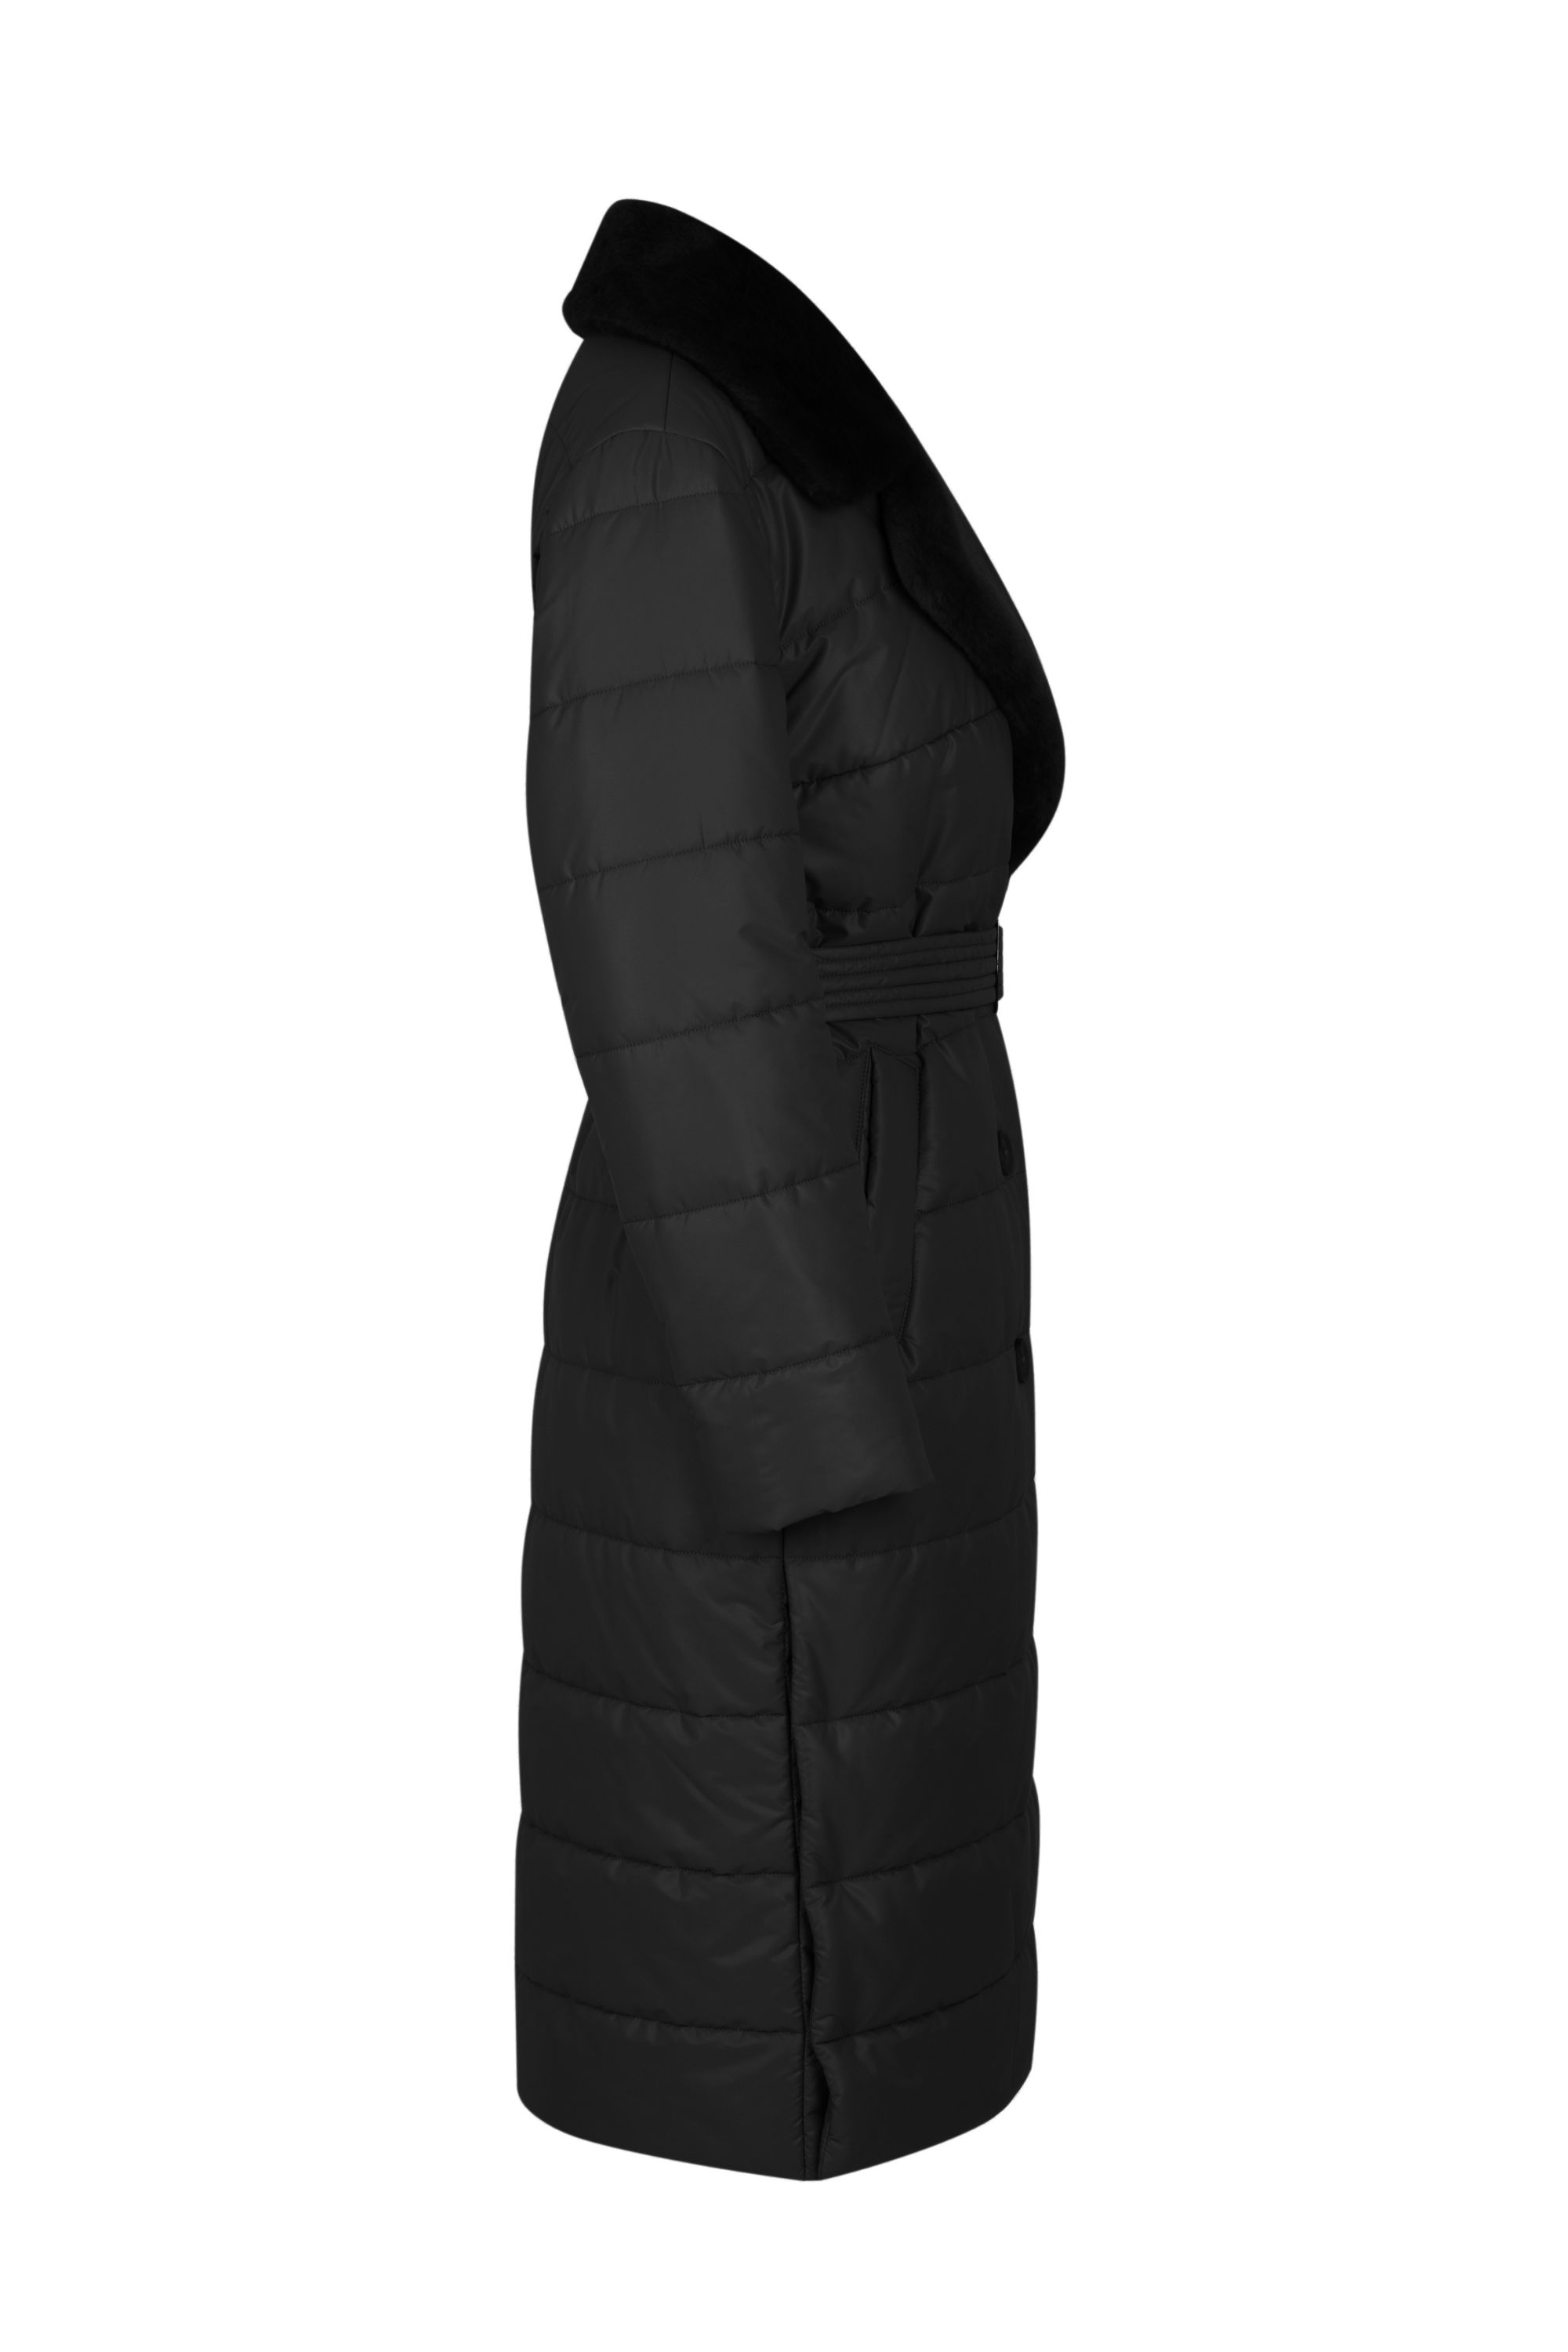 Пальто женское плащевое утепленное 5S-13038-1